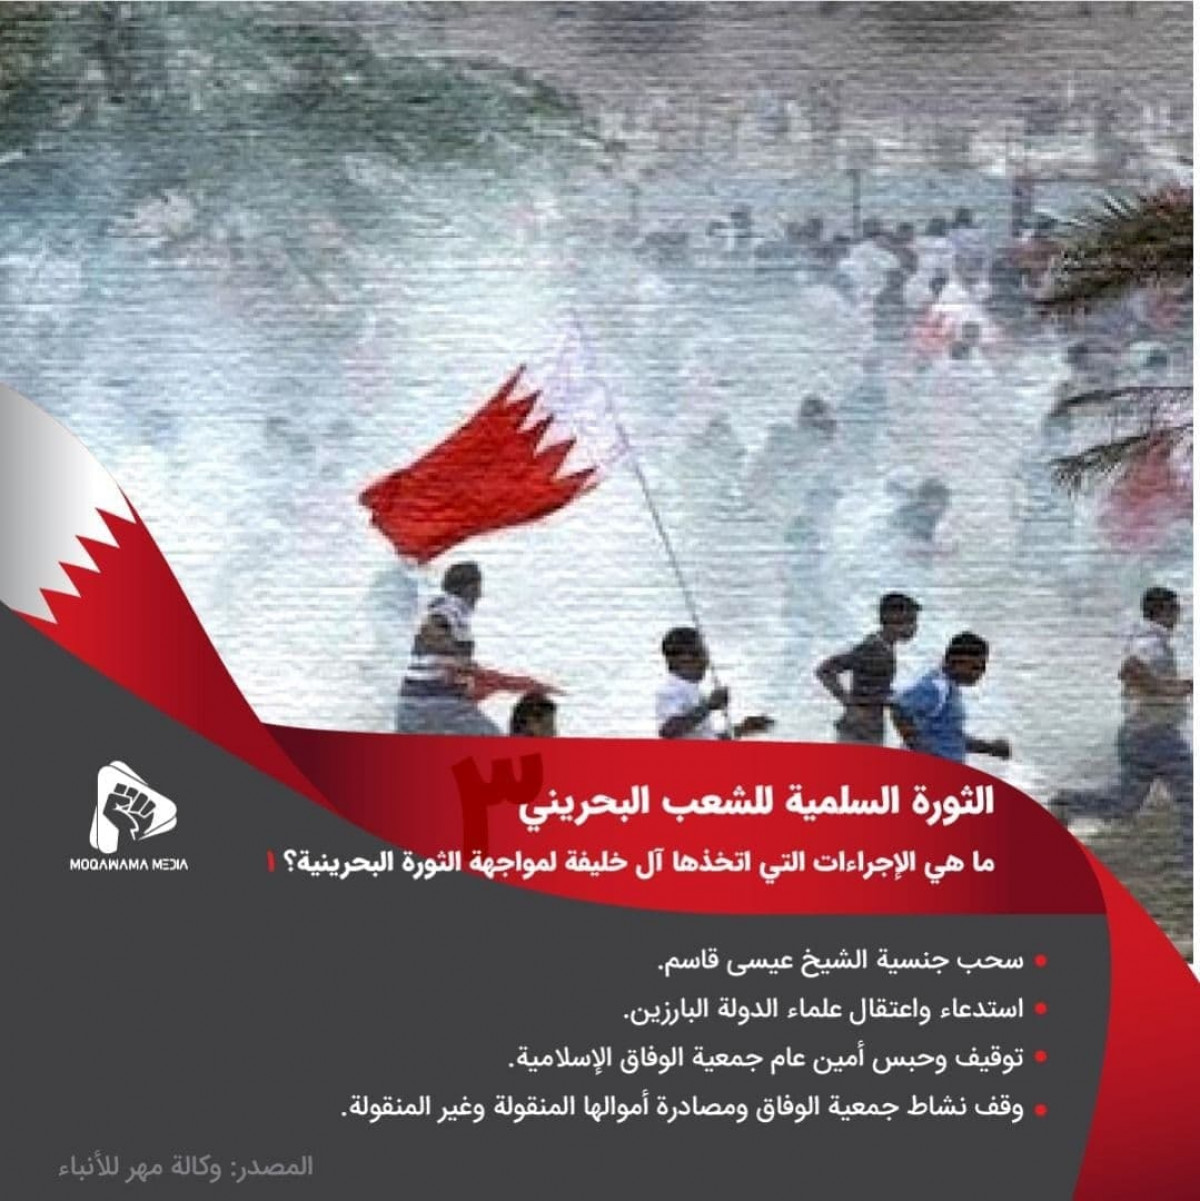 الثورة السلمية للشعب البحريني / ما هي الإجراءات التي اتخذها آل خليفة لمواجهة الثورة البحرينية؟ 1